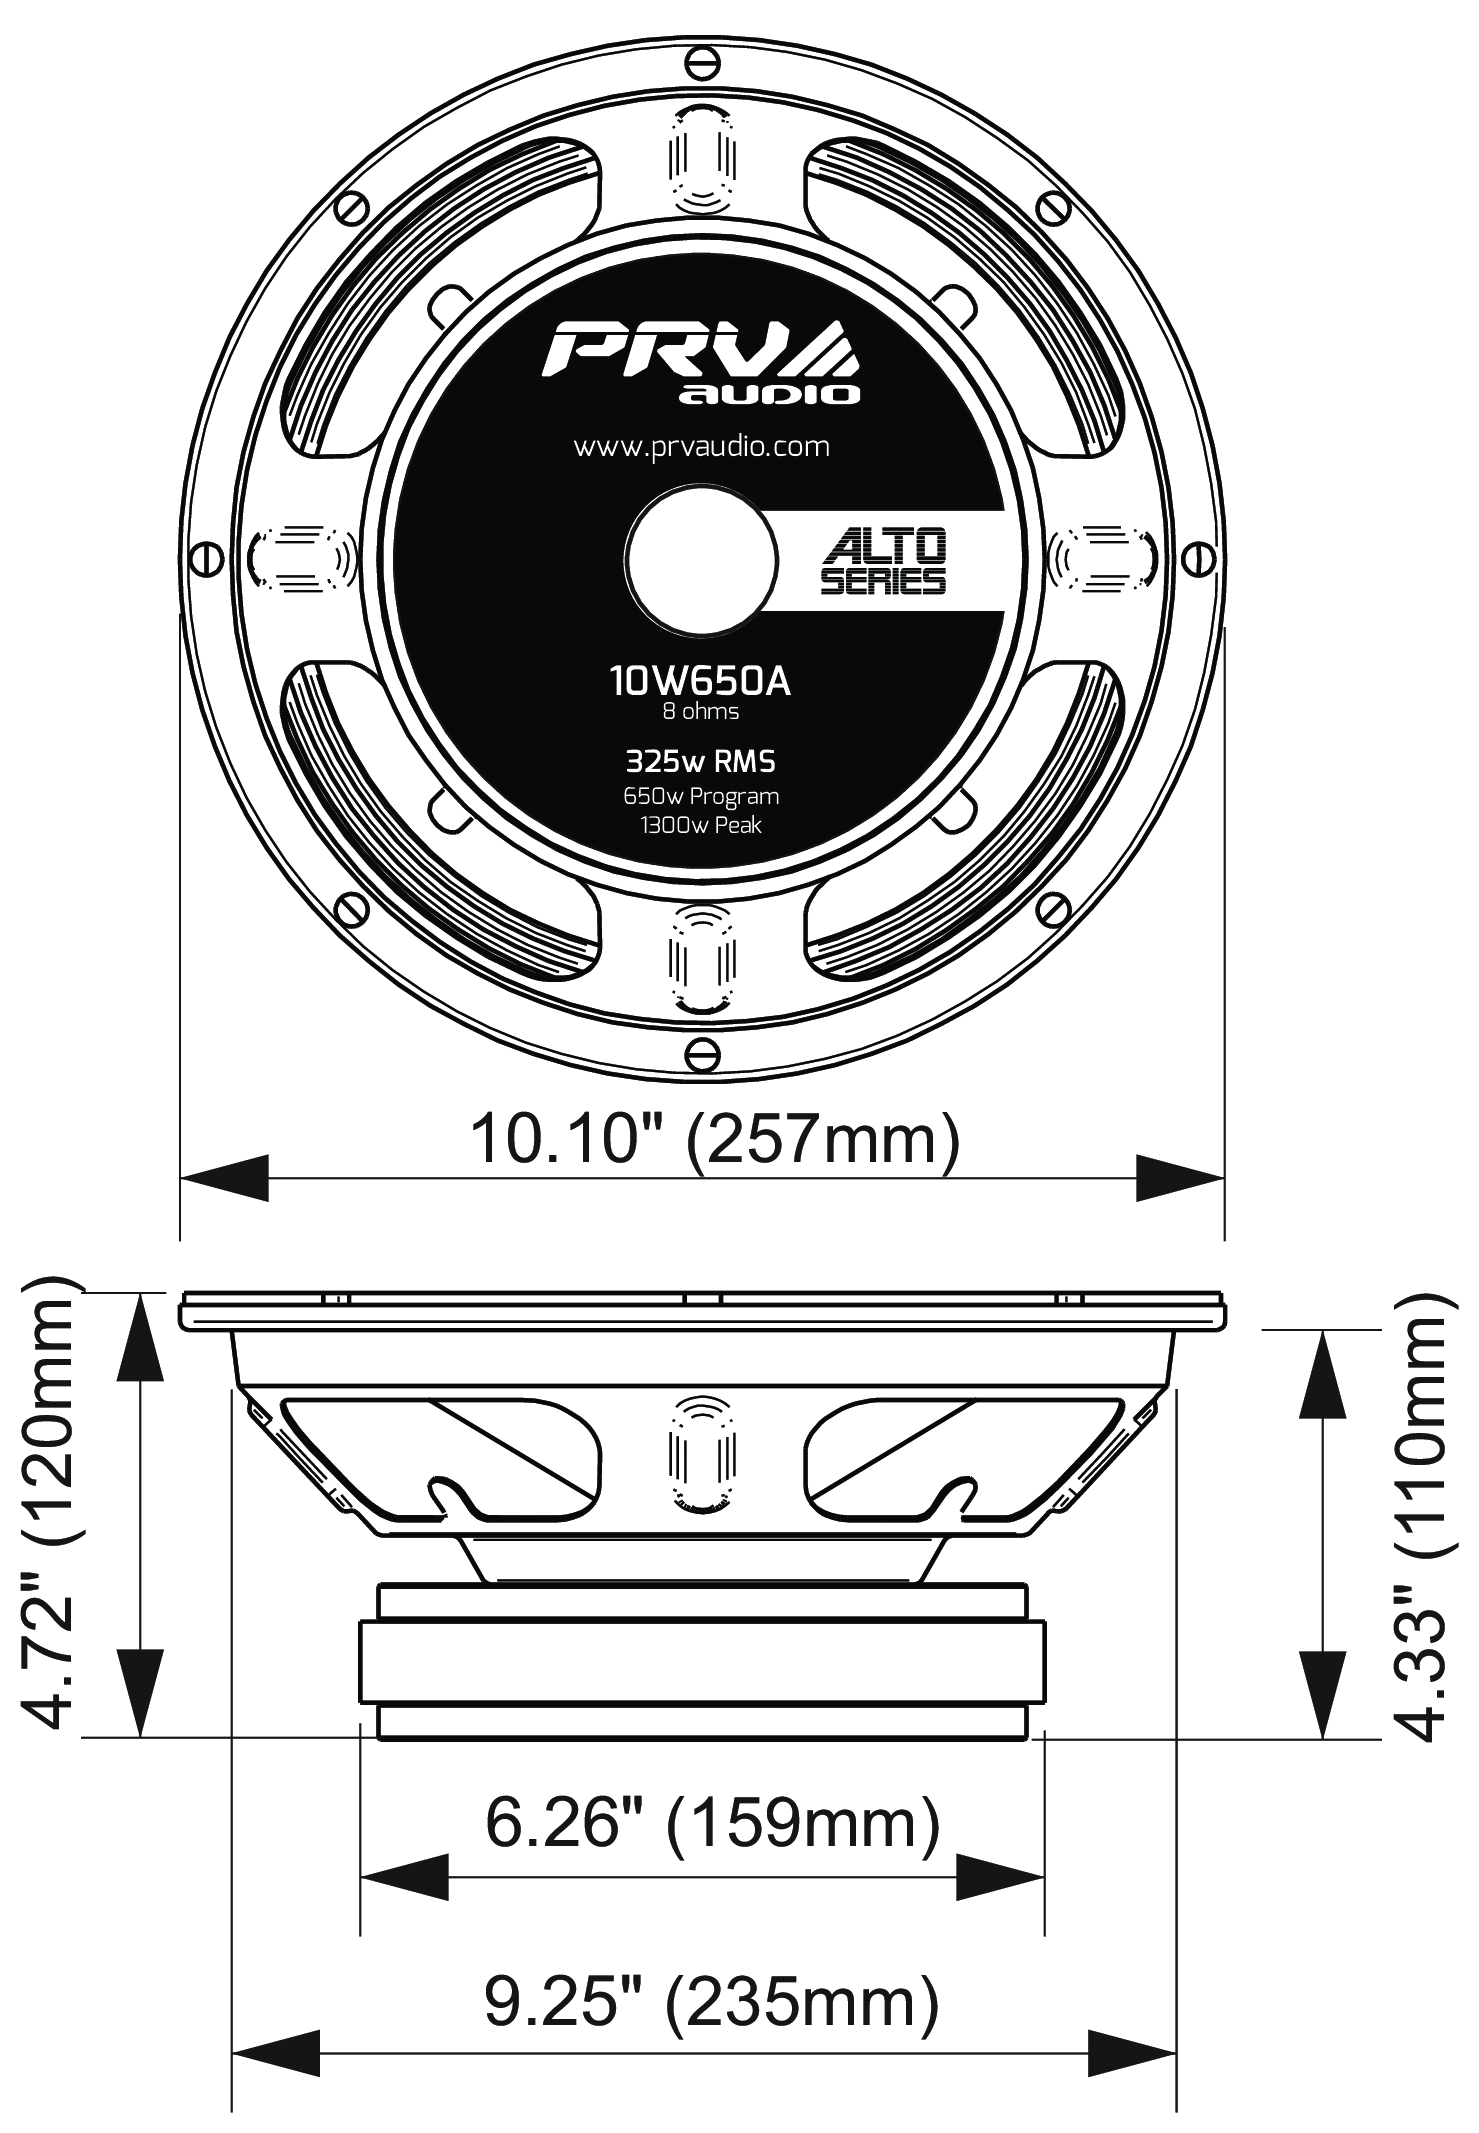 PRV Audio 10W650A Dimensions